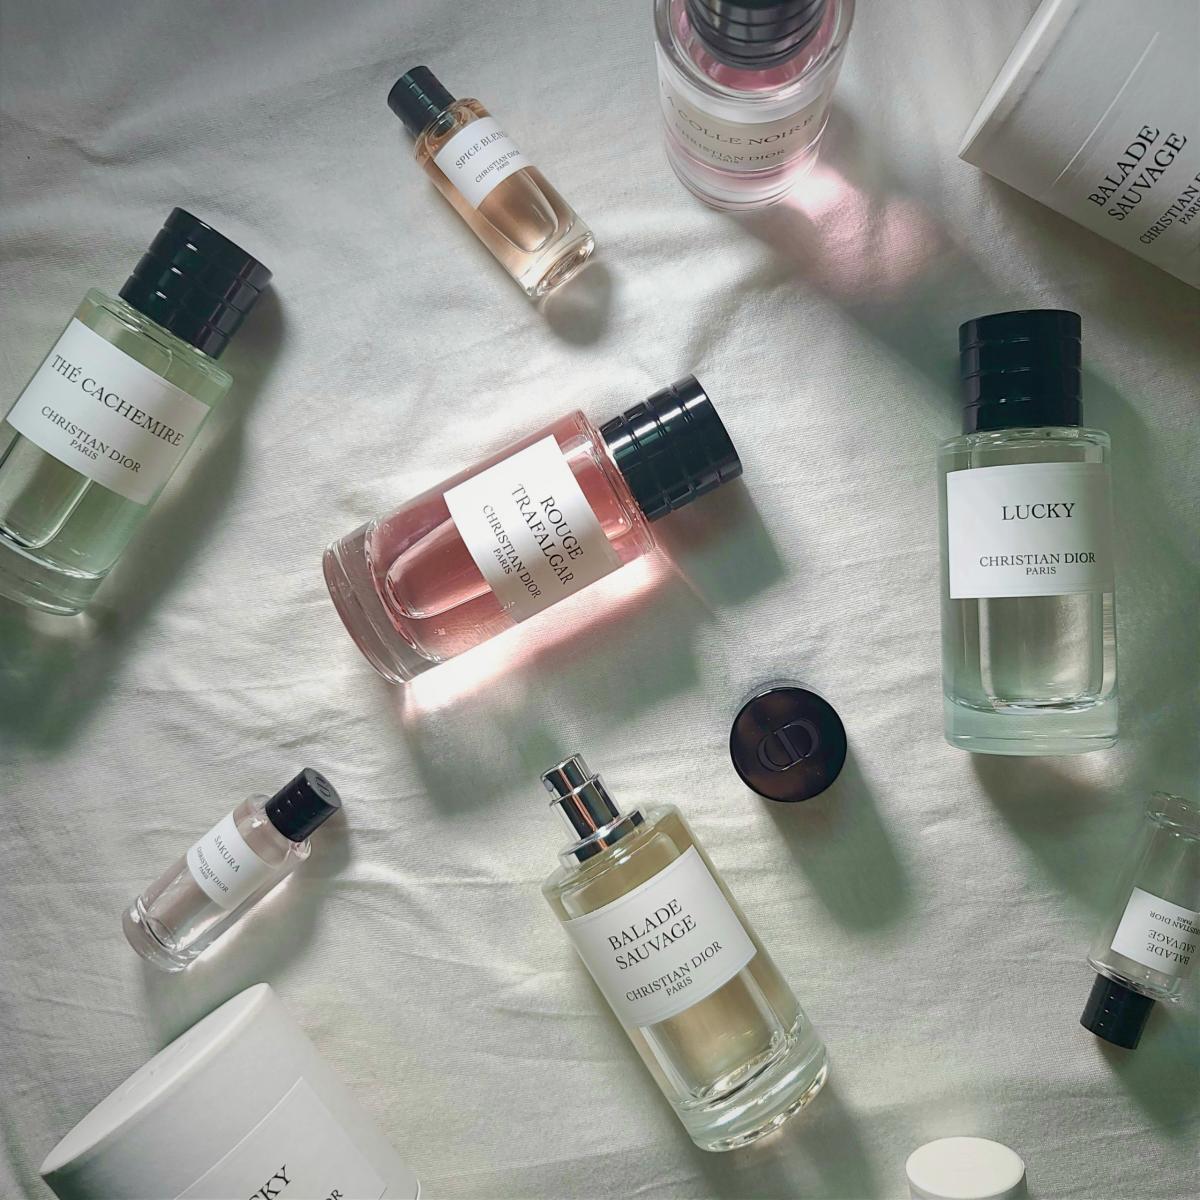 Lucky Christian Dior parfum - un parfum pour homme et femme 2018